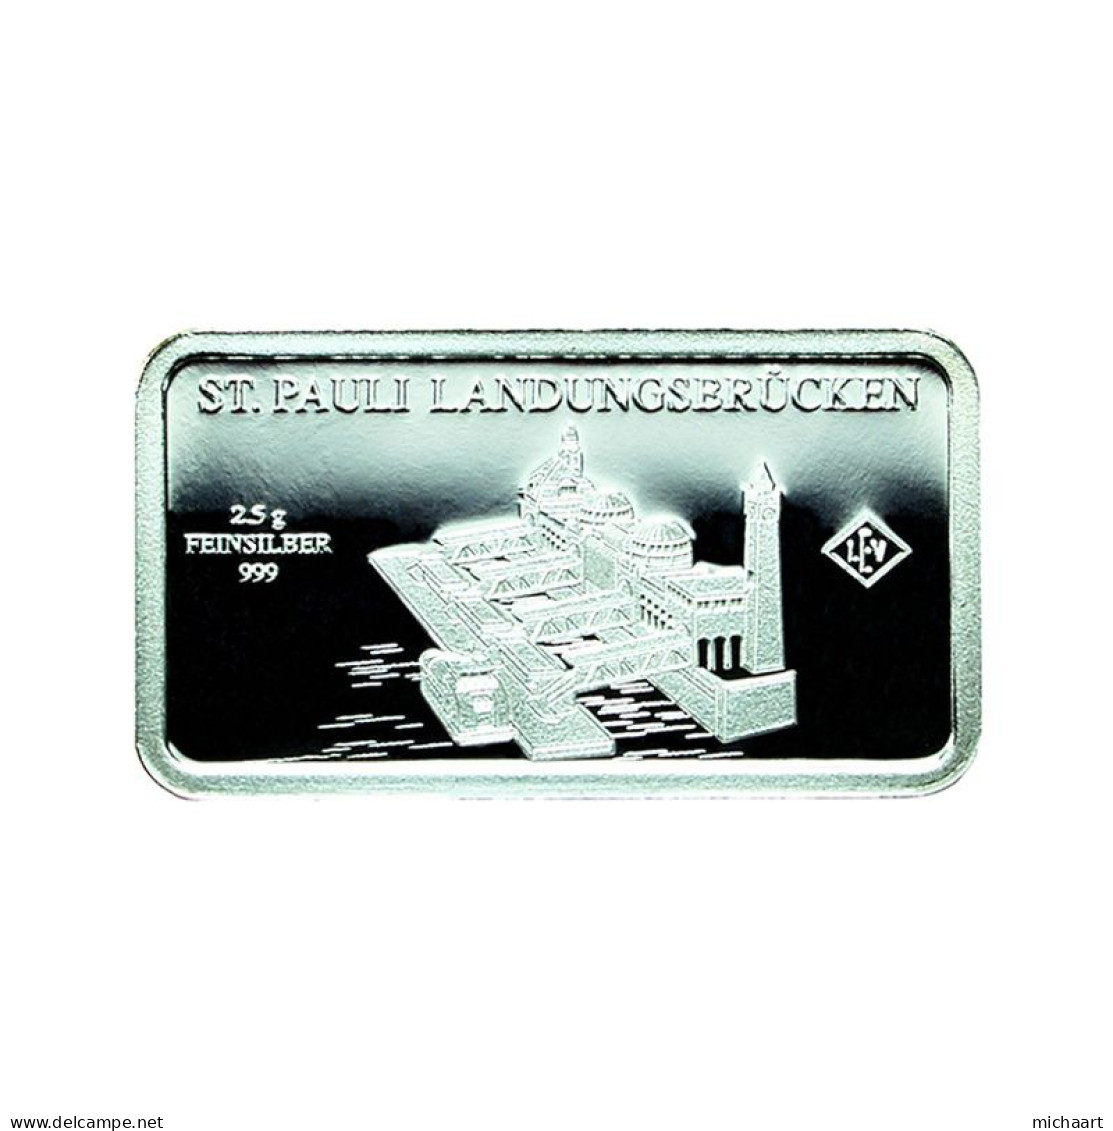 Germany Silver Ingot Bar Proof 2.5g Landmarks St. Pauli Piers 03857 - Gedenkmünzen